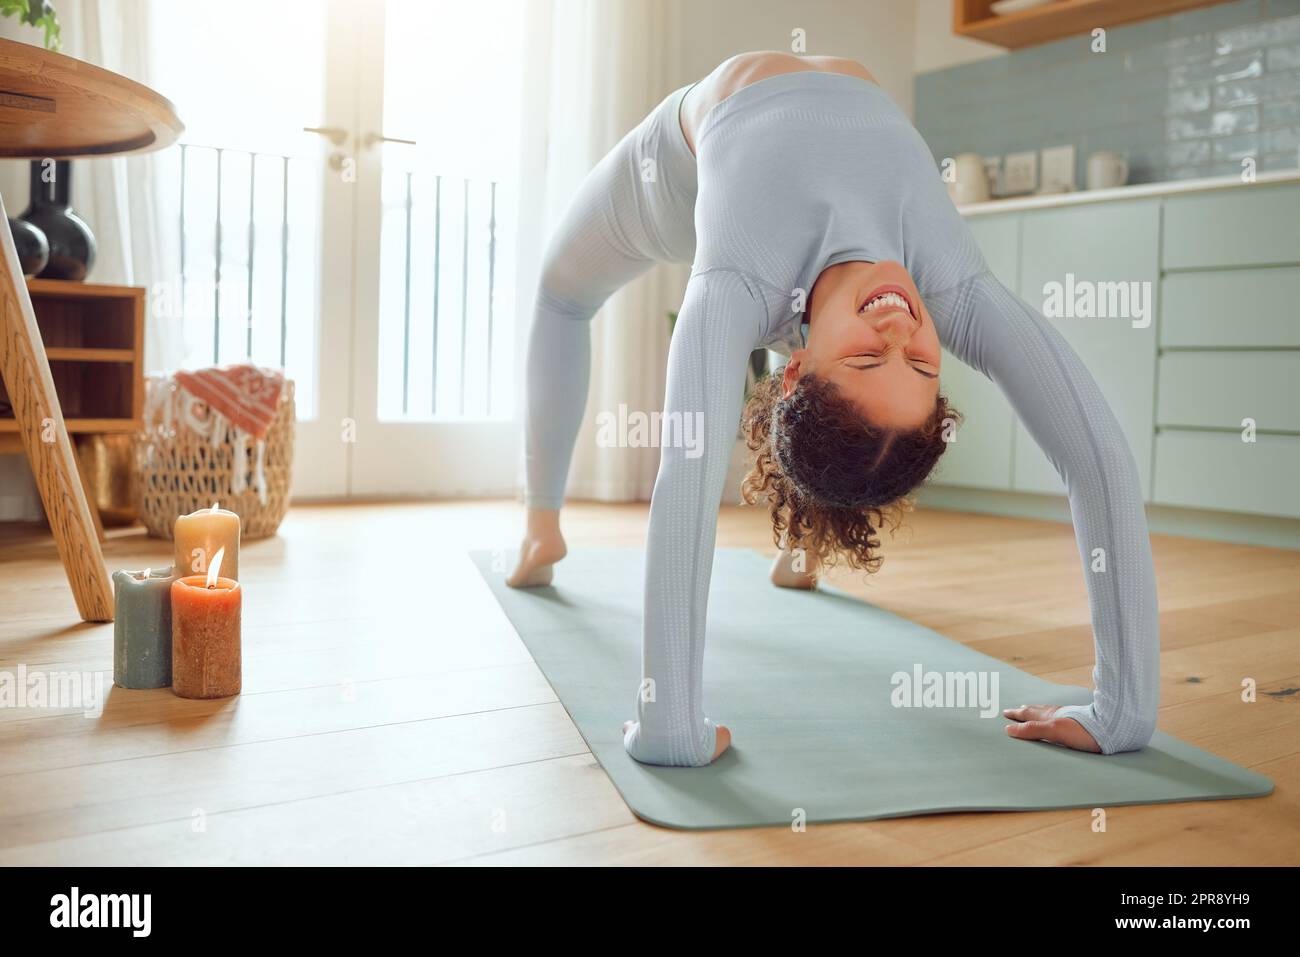 Belle jeune femme de course mixte pratiquant le yoga à la maison. Femme hispanique faisant de l'exercice pilates dans le cadre de son entraînement. S'entraîner pour garder son esprit et son corps en bonne santé. Dédié à un style de vie physique Banque D'Images